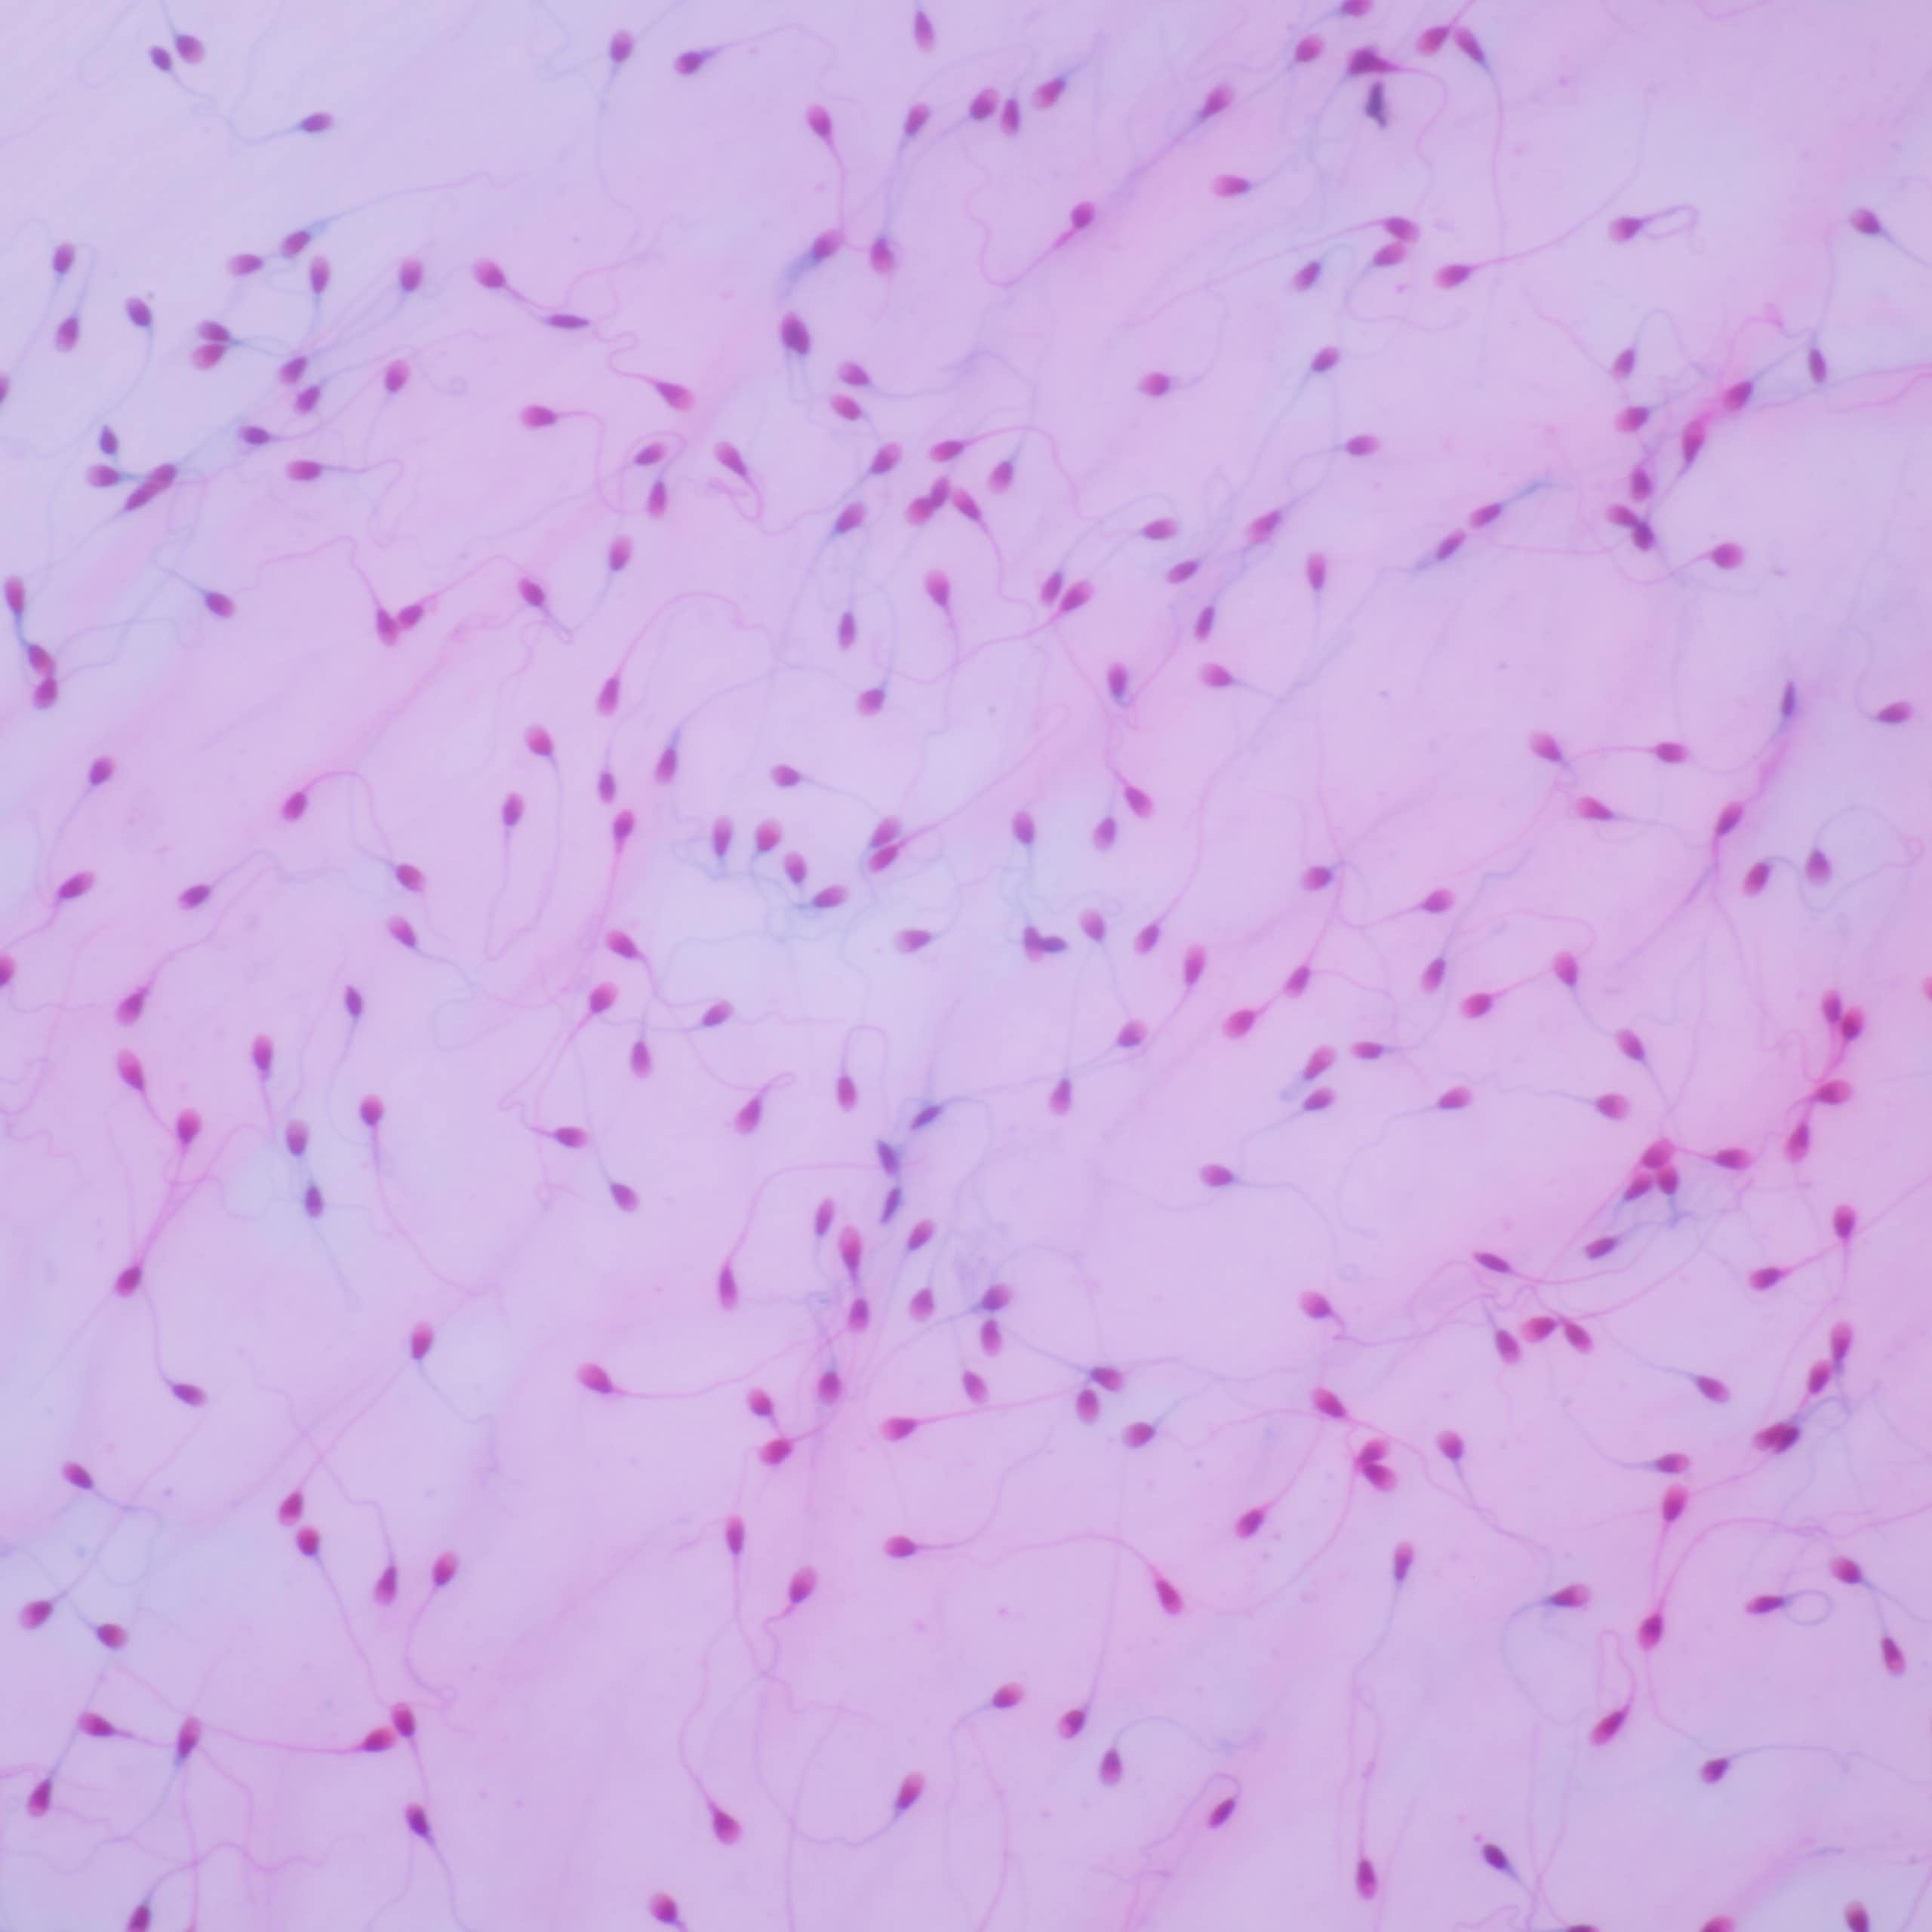 La microbiota también podría desempeñar un papel en la fertilidad del hombre